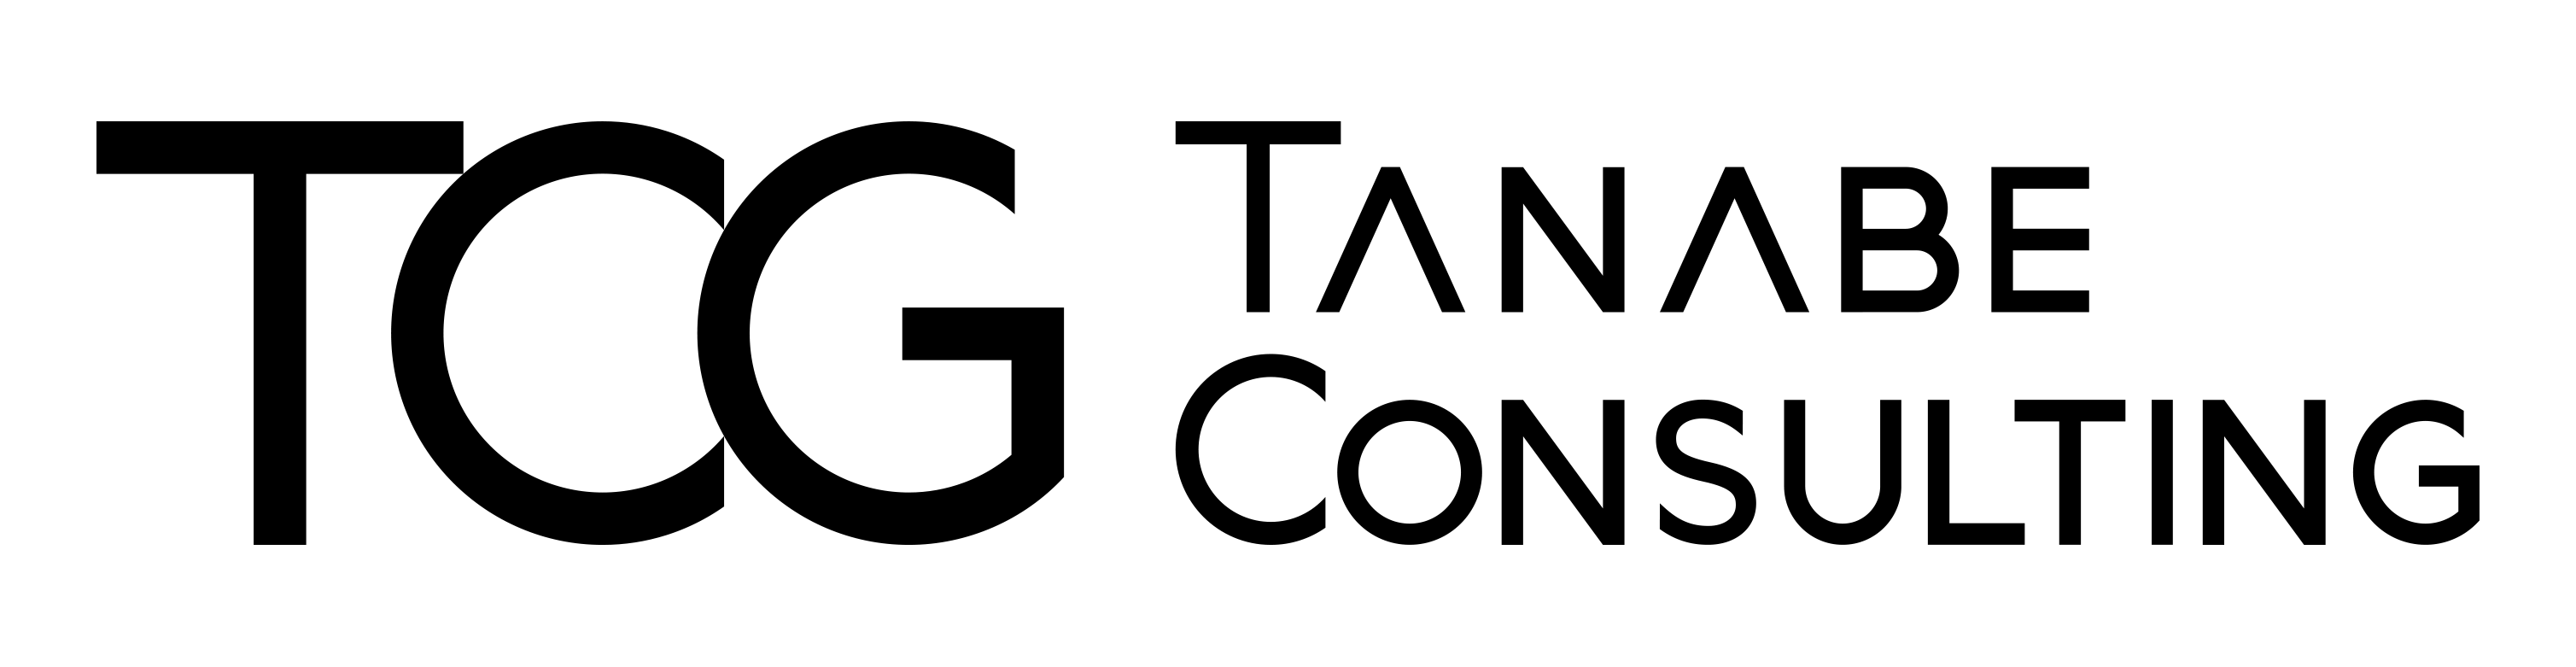 株式会社タナベコンサルティング Logo.